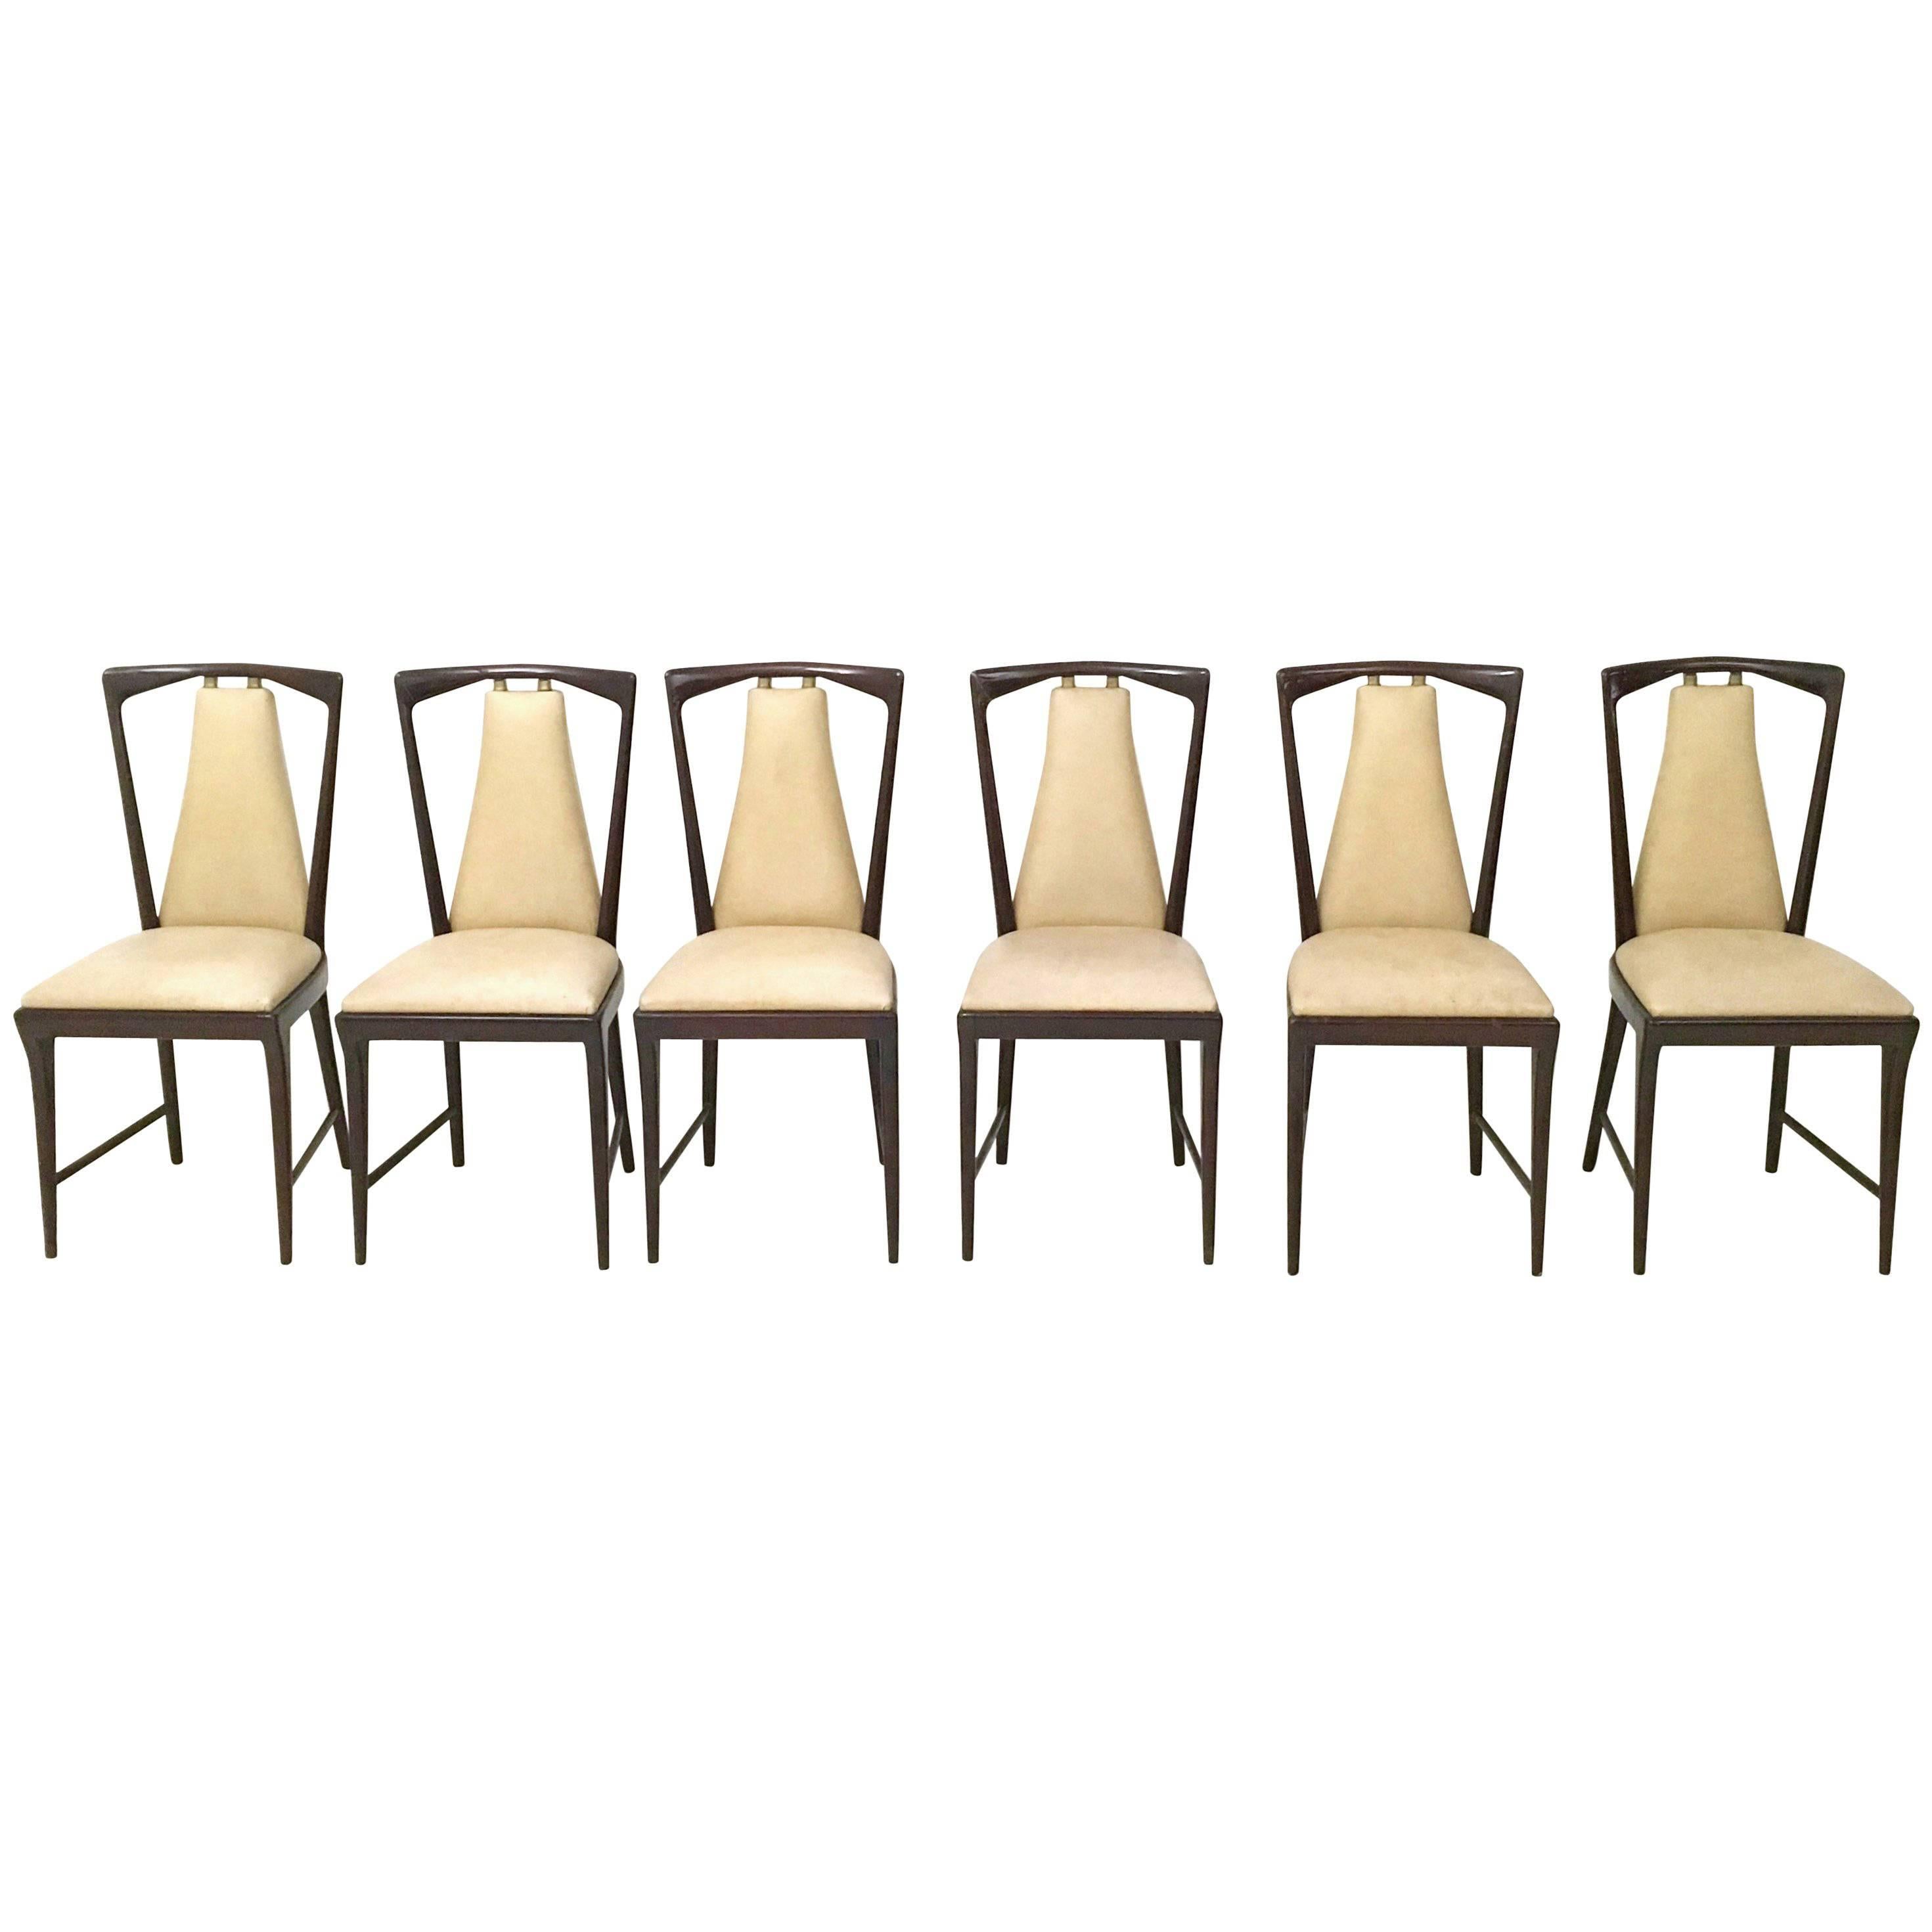 Set of Six Mahogany and Skai Chairs, style of Osvaldo Borsani, Italy, 1950s